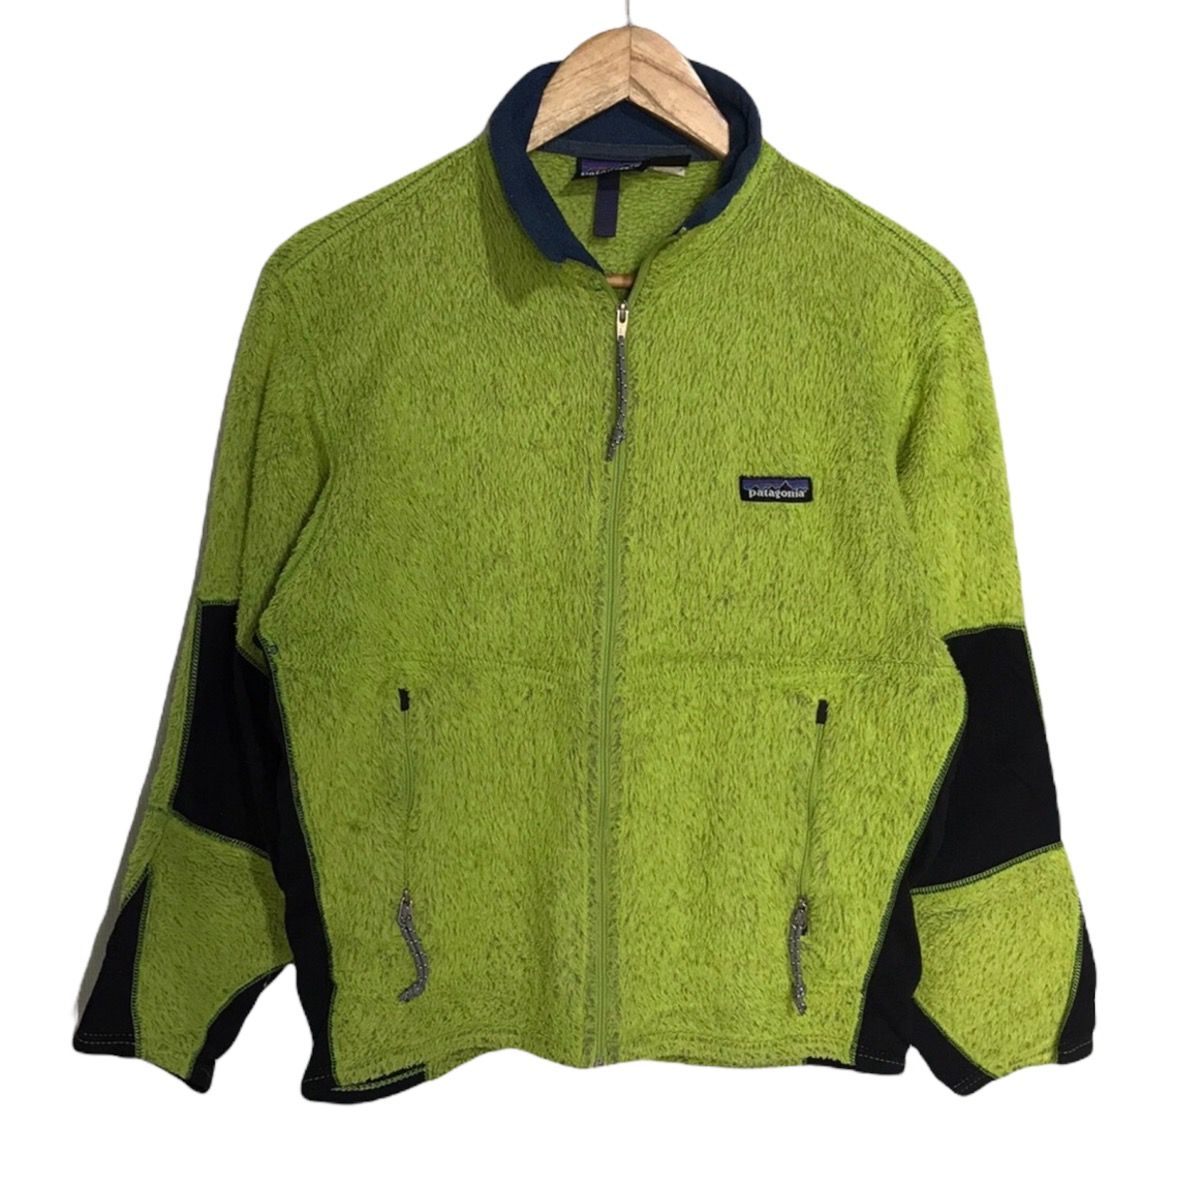 Patagonia green polartec fleece made in usa - 1